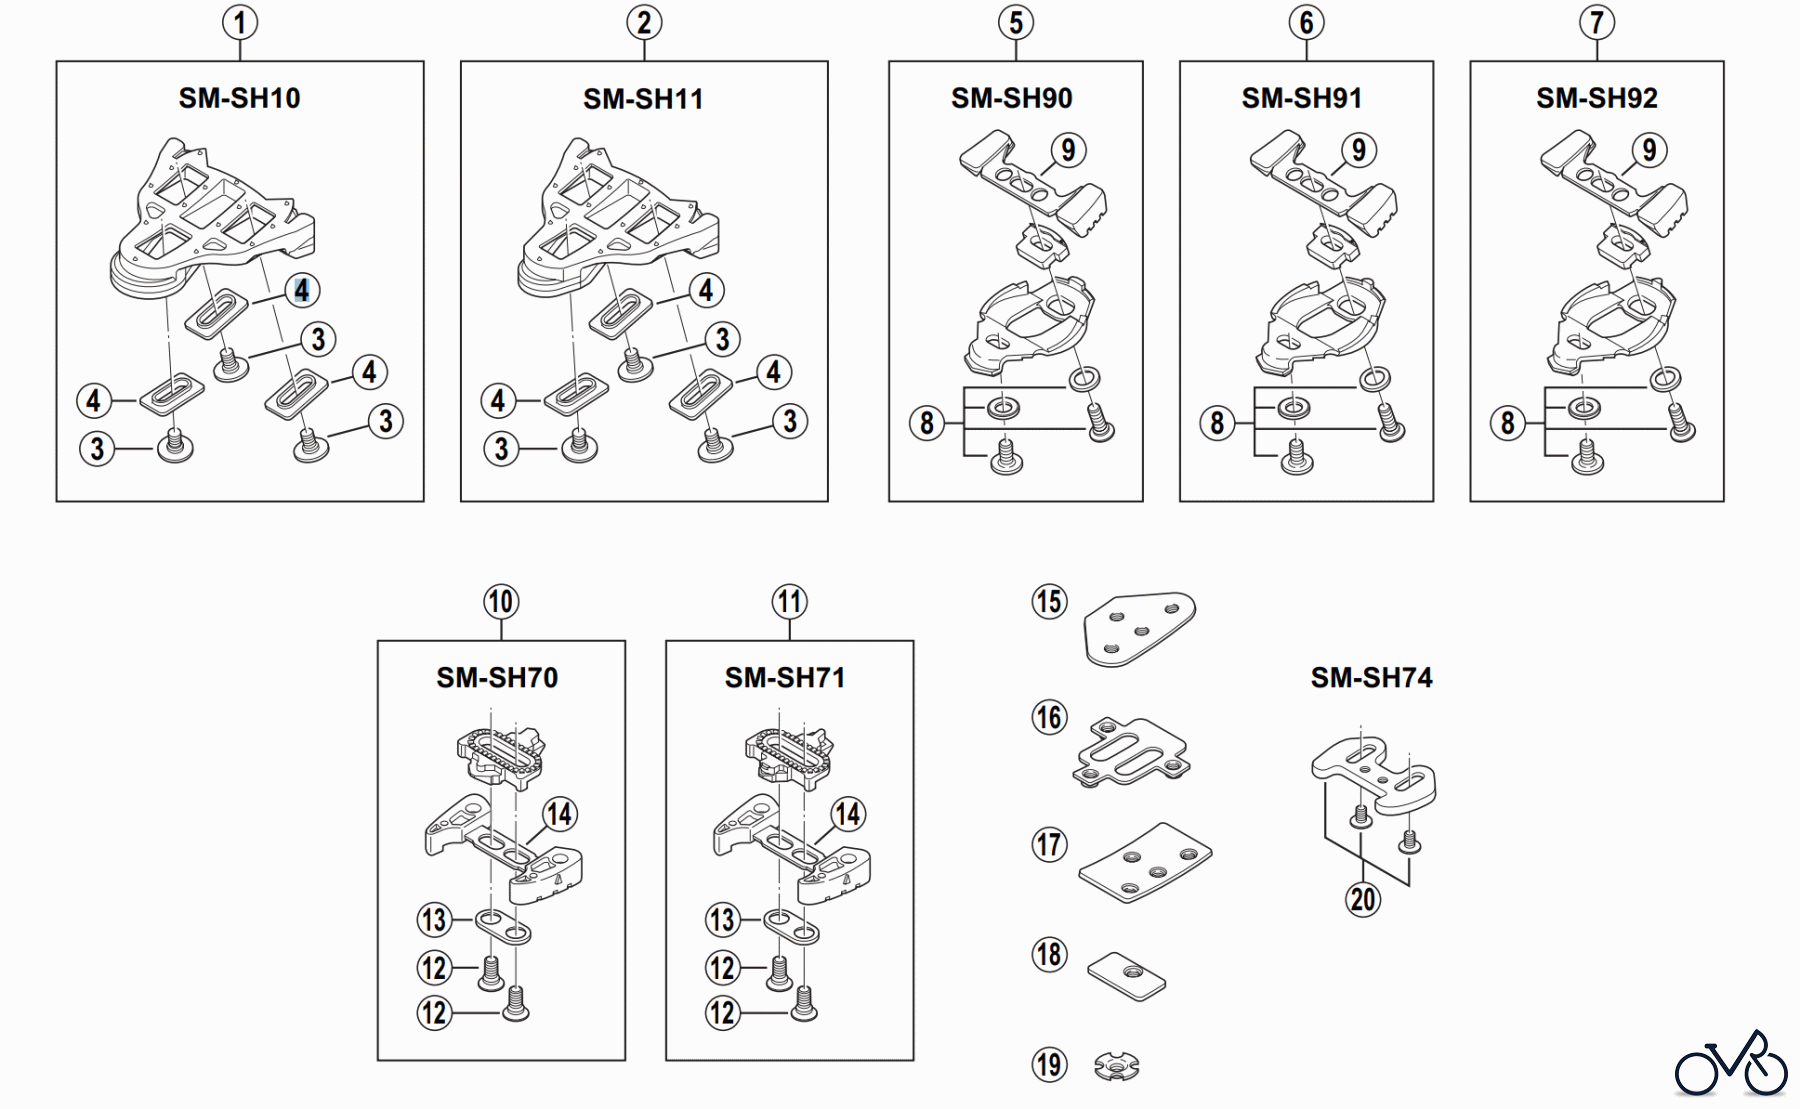  Shimano SM Smallparts - Kleinteile, RT, BT, BB, CD SCHUHPLATTEN für Rennräder SM-SH10, SM-SH11, SM-SH90, SM-SH91, SM-SH92, SM-SH70, SM-SH71, SM-SH74